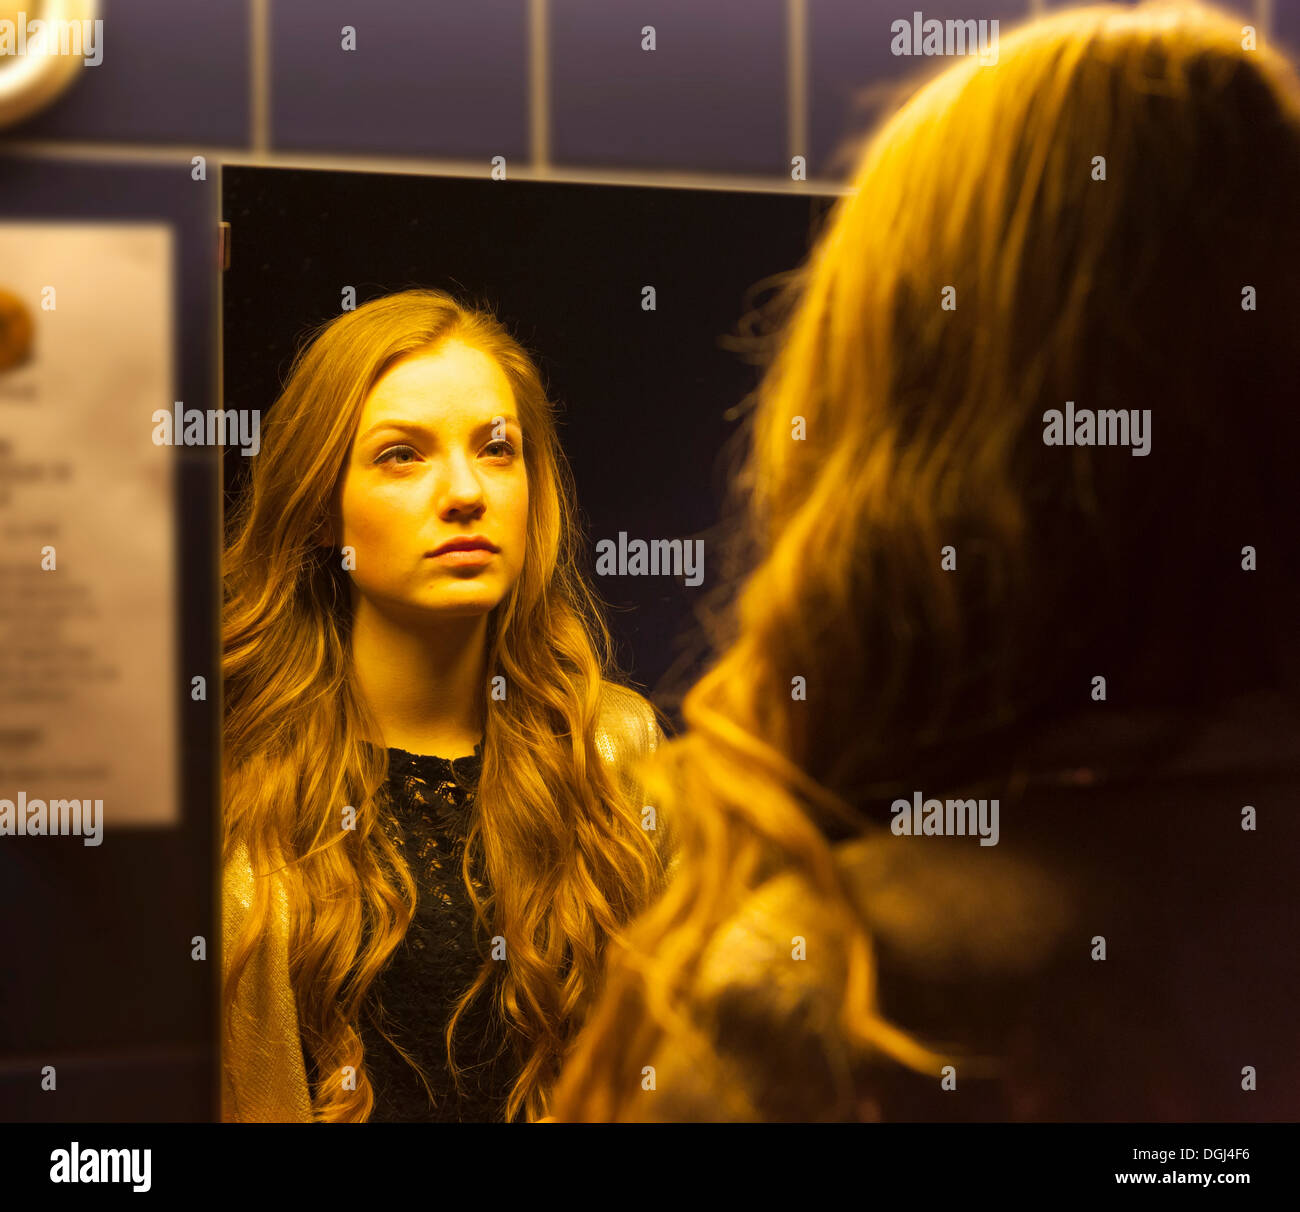 Adolescente à son reflet dans le miroir Banque D'Images